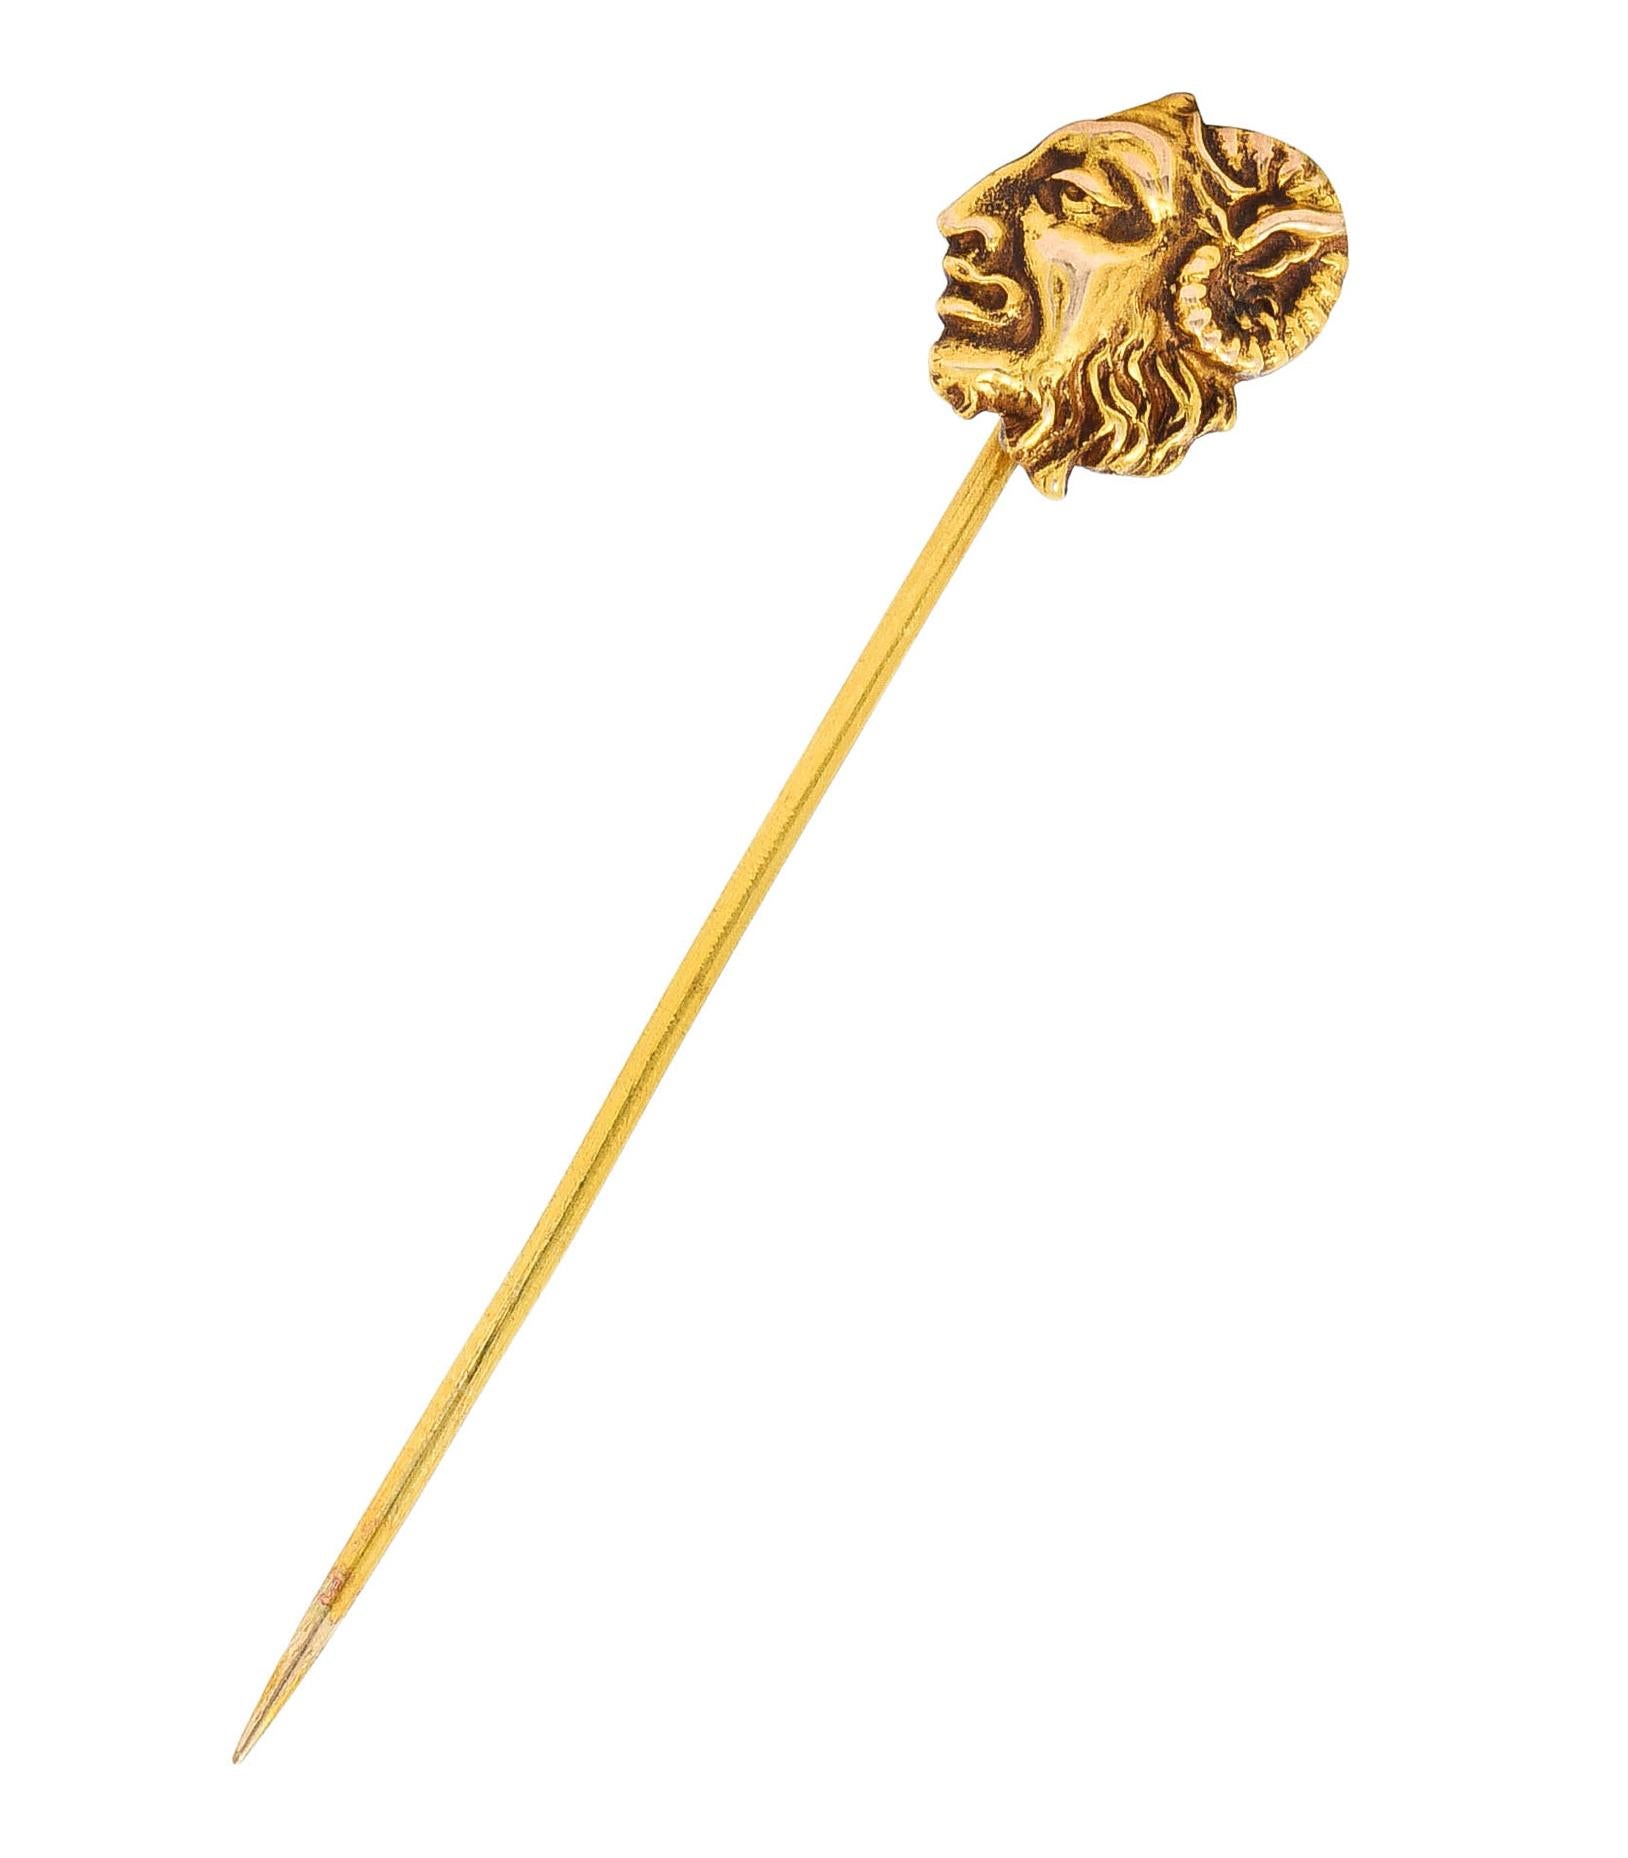 Épingle de Stick conçue comme le profil de Pan - dieu de la nature

Accentué par un visage stylisé avec des cheveux texturés et des cornes

Testé comme de l'or 18 carats

Circa : 1905

Tête panoramique : 1/2 x 1/2 pouce

Longueur totale : 2 3/8